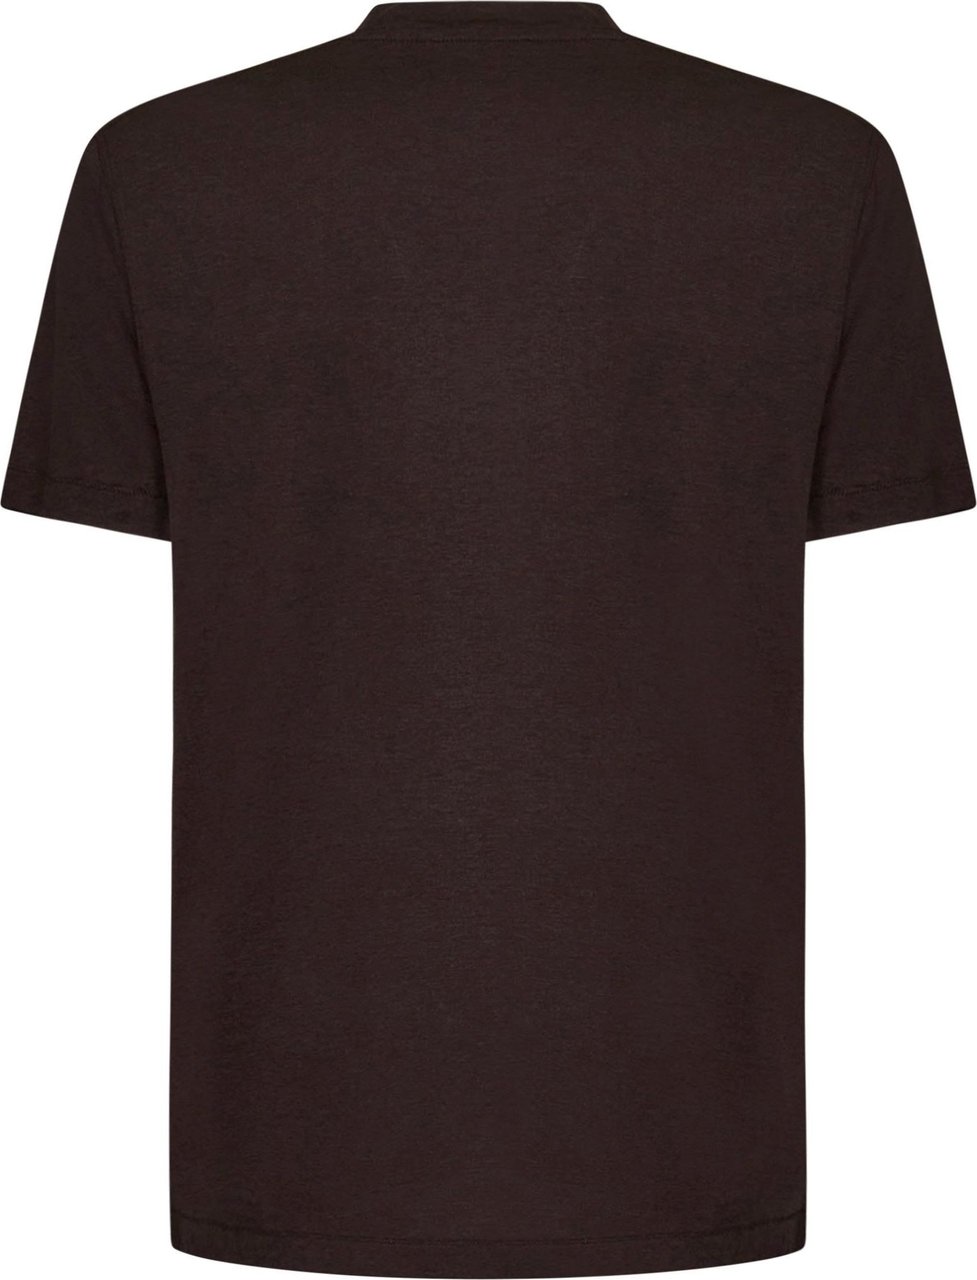 Tom Ford T-shirt Bruin